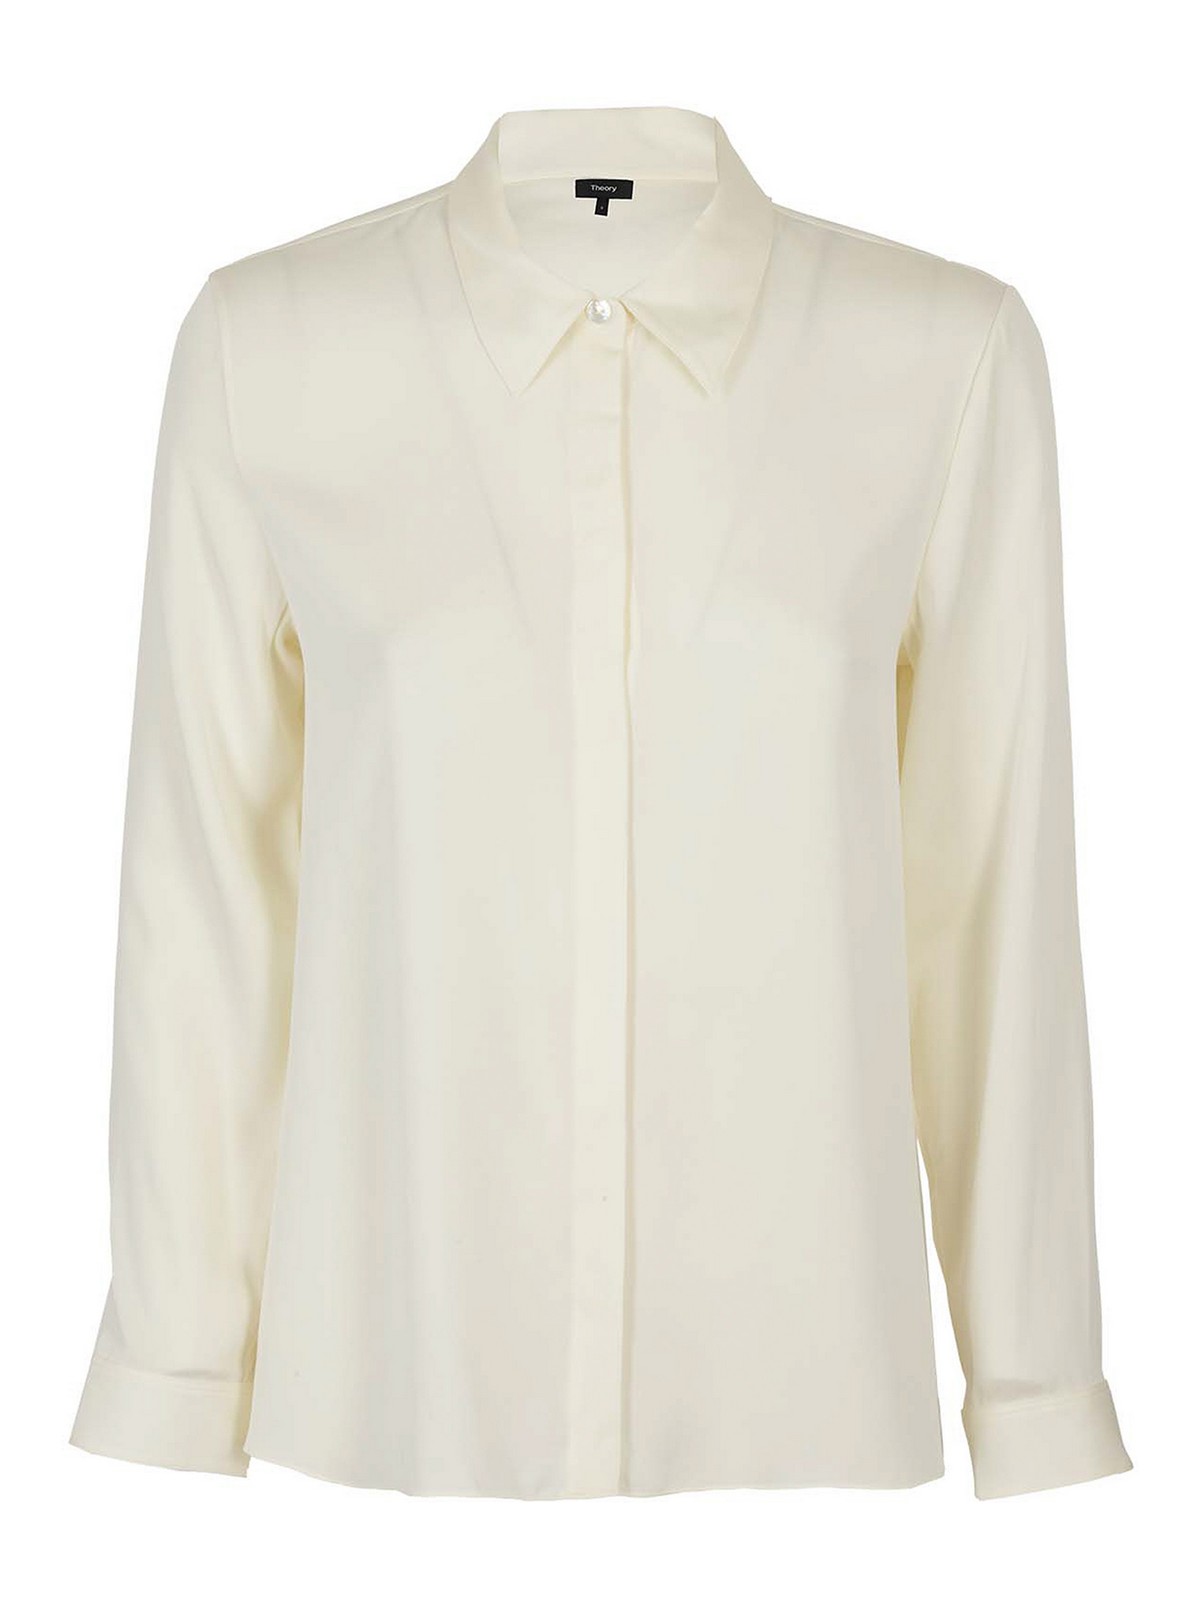 Shirts Theory - Silk shirt - K0602519C05 | Shop online at iKRIX